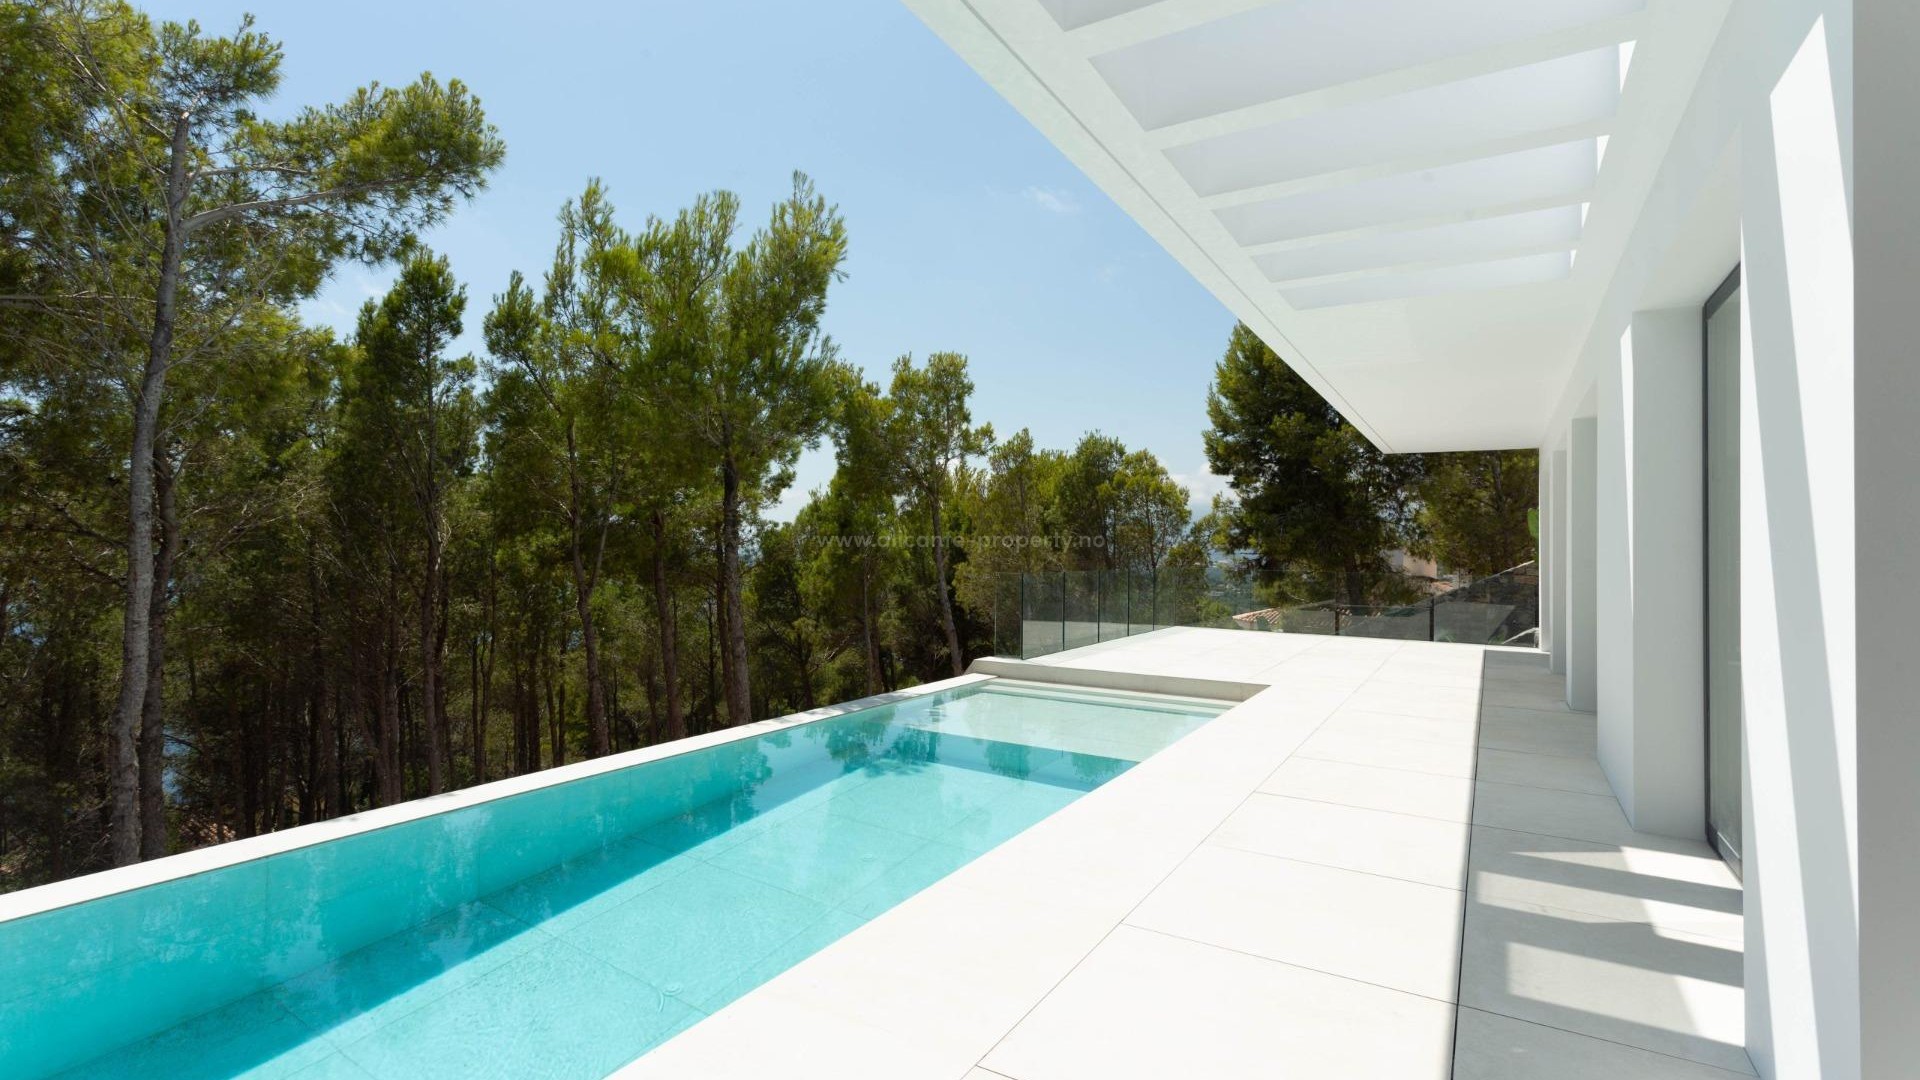 Luksus-villa i Altea Hills, 4 soverom, 4 bad, infinity pool, rom for treningsstudio, badstue eller biljard, den beste utsikten over Middelhavet og Altea